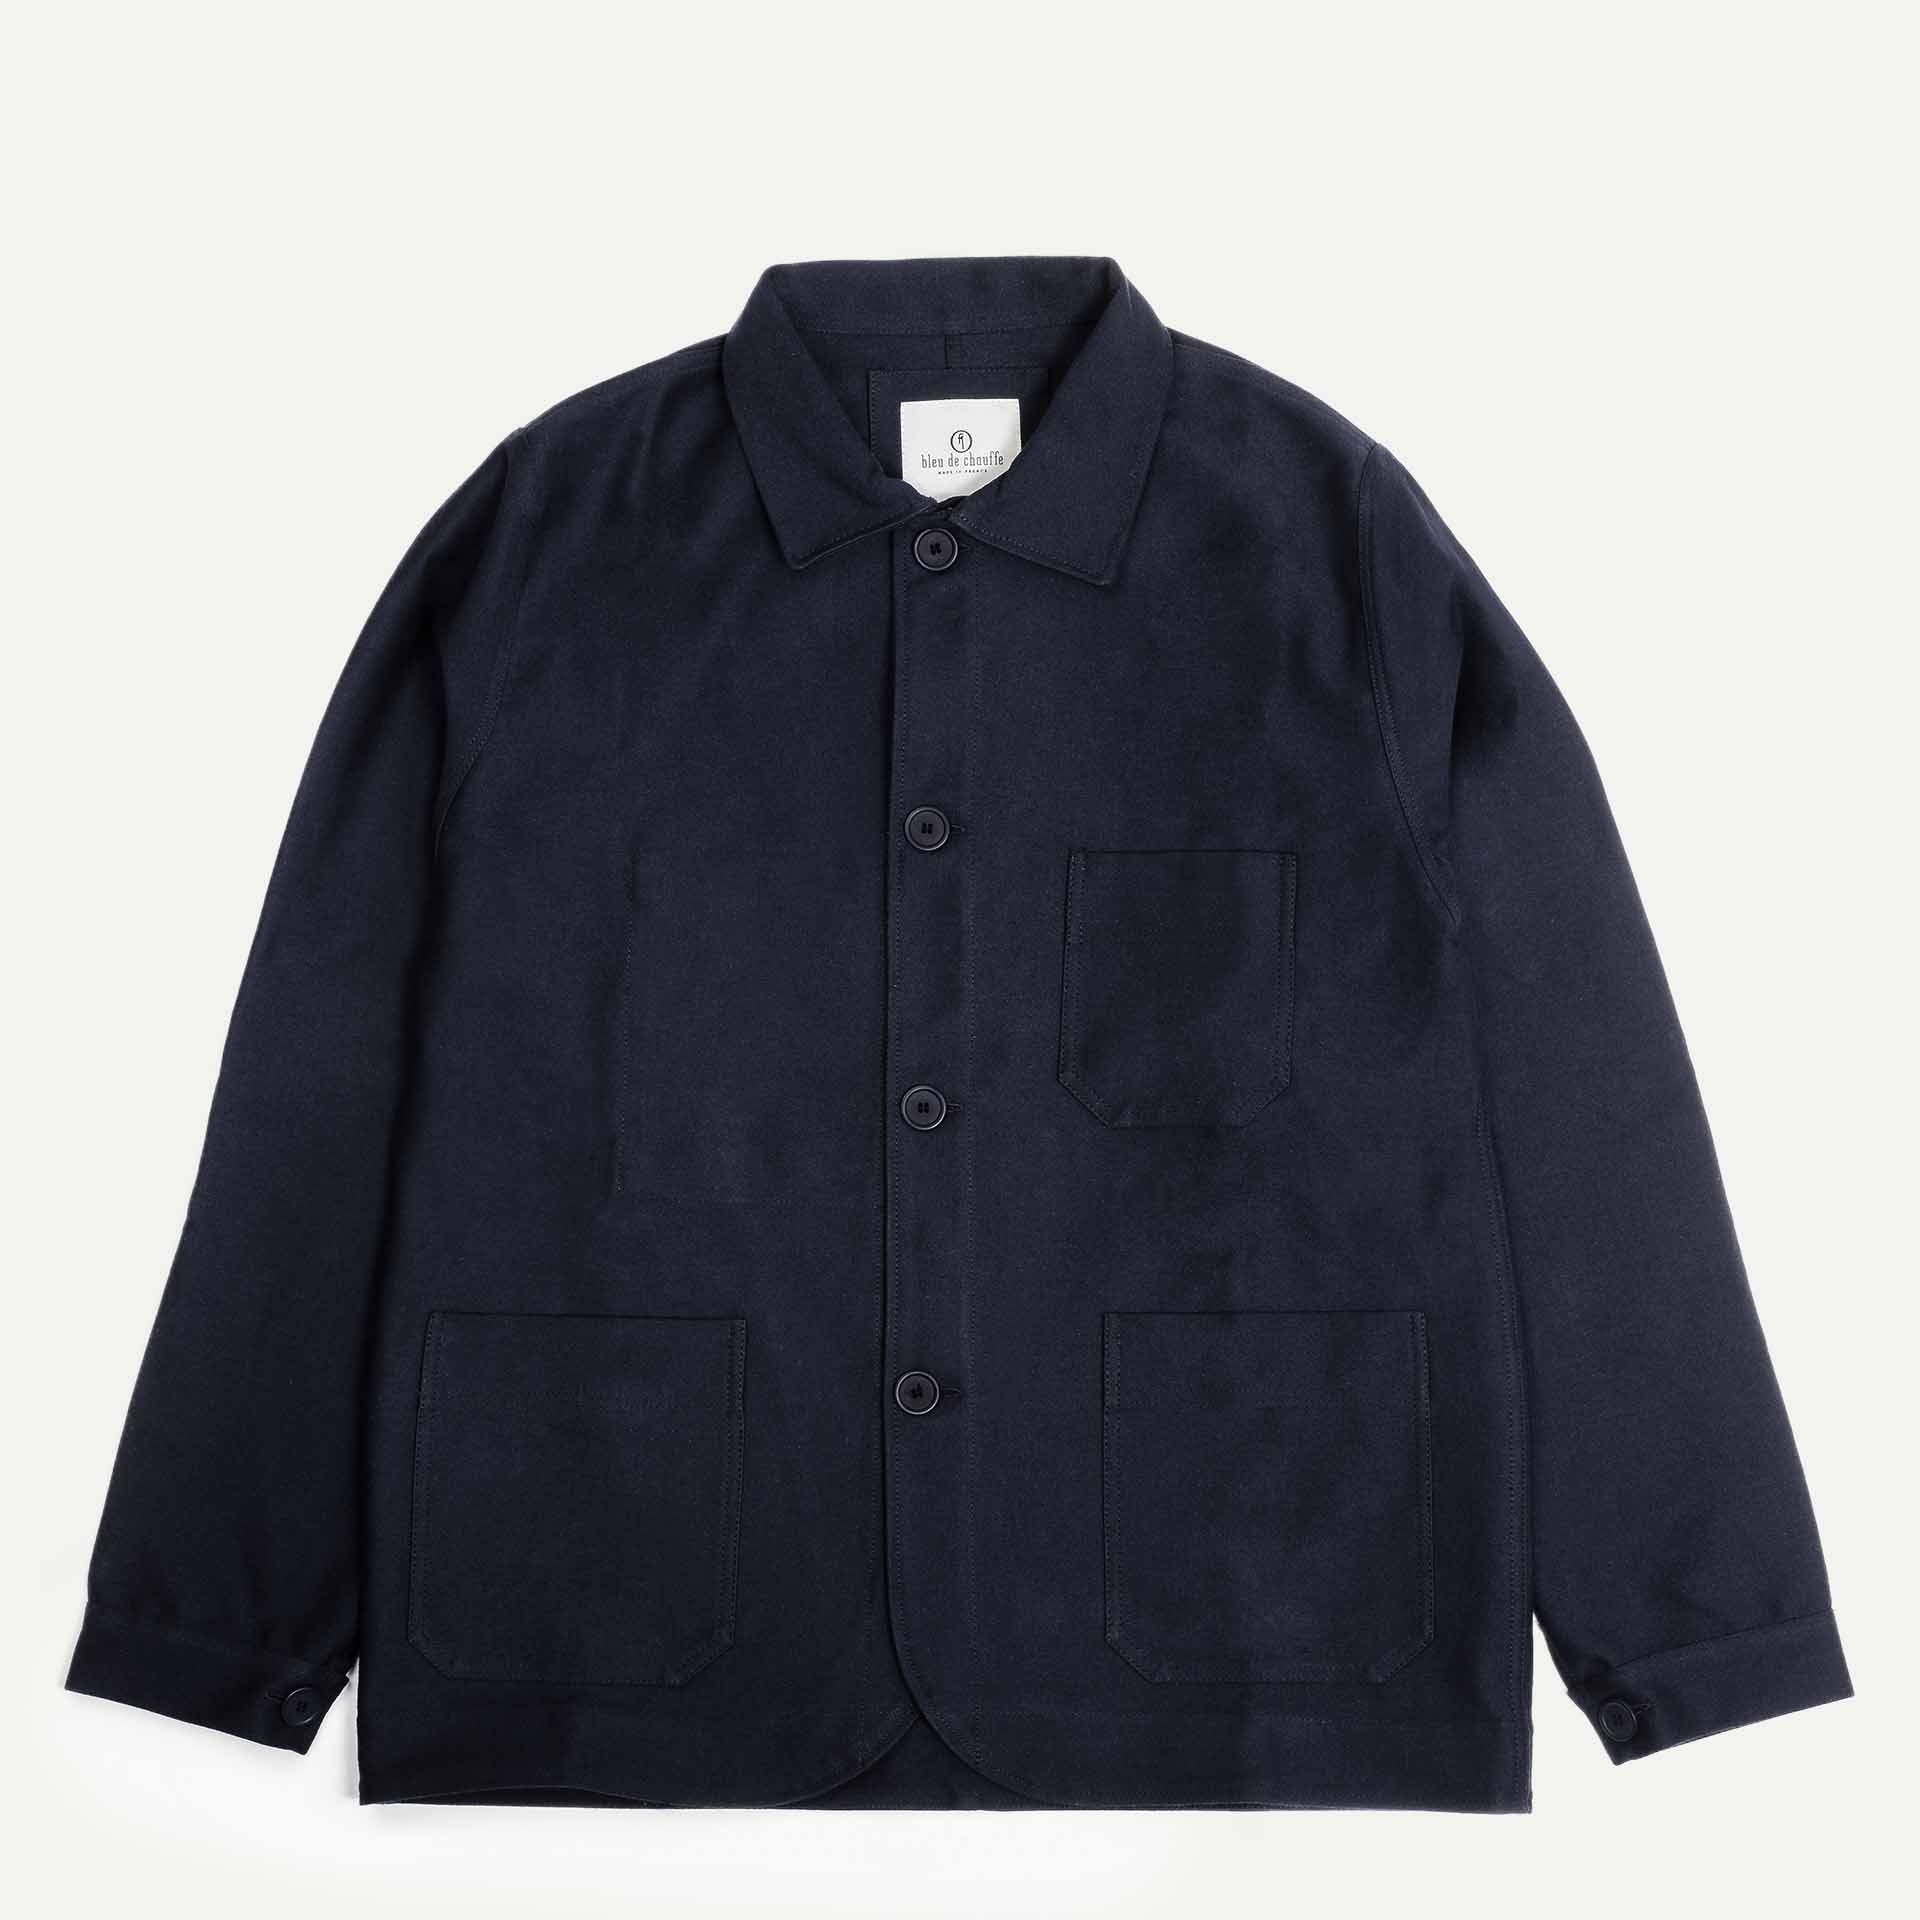 Germinal Work jacket - Navy Blue